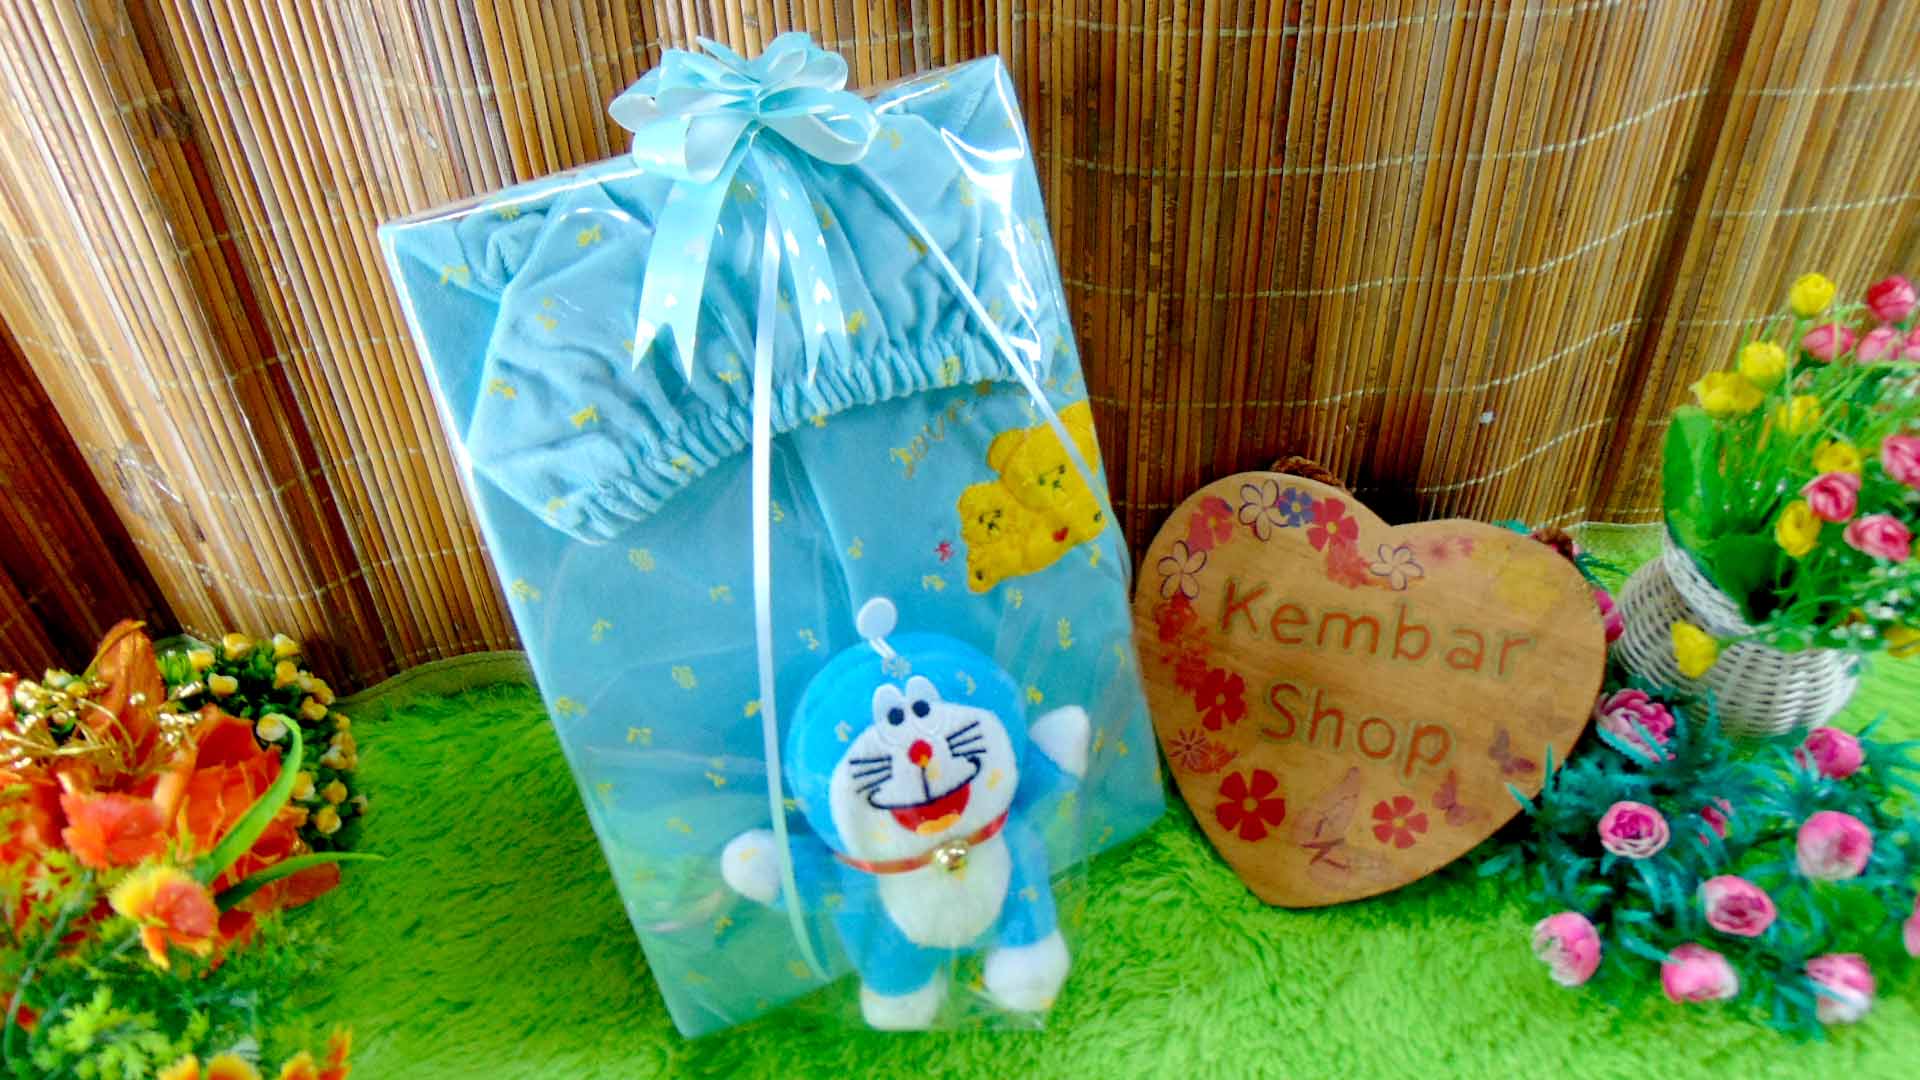 FREE KARTU UCAPAN paket kado lahiran bayi baby gift set box jaket beludru plus boneka (2)